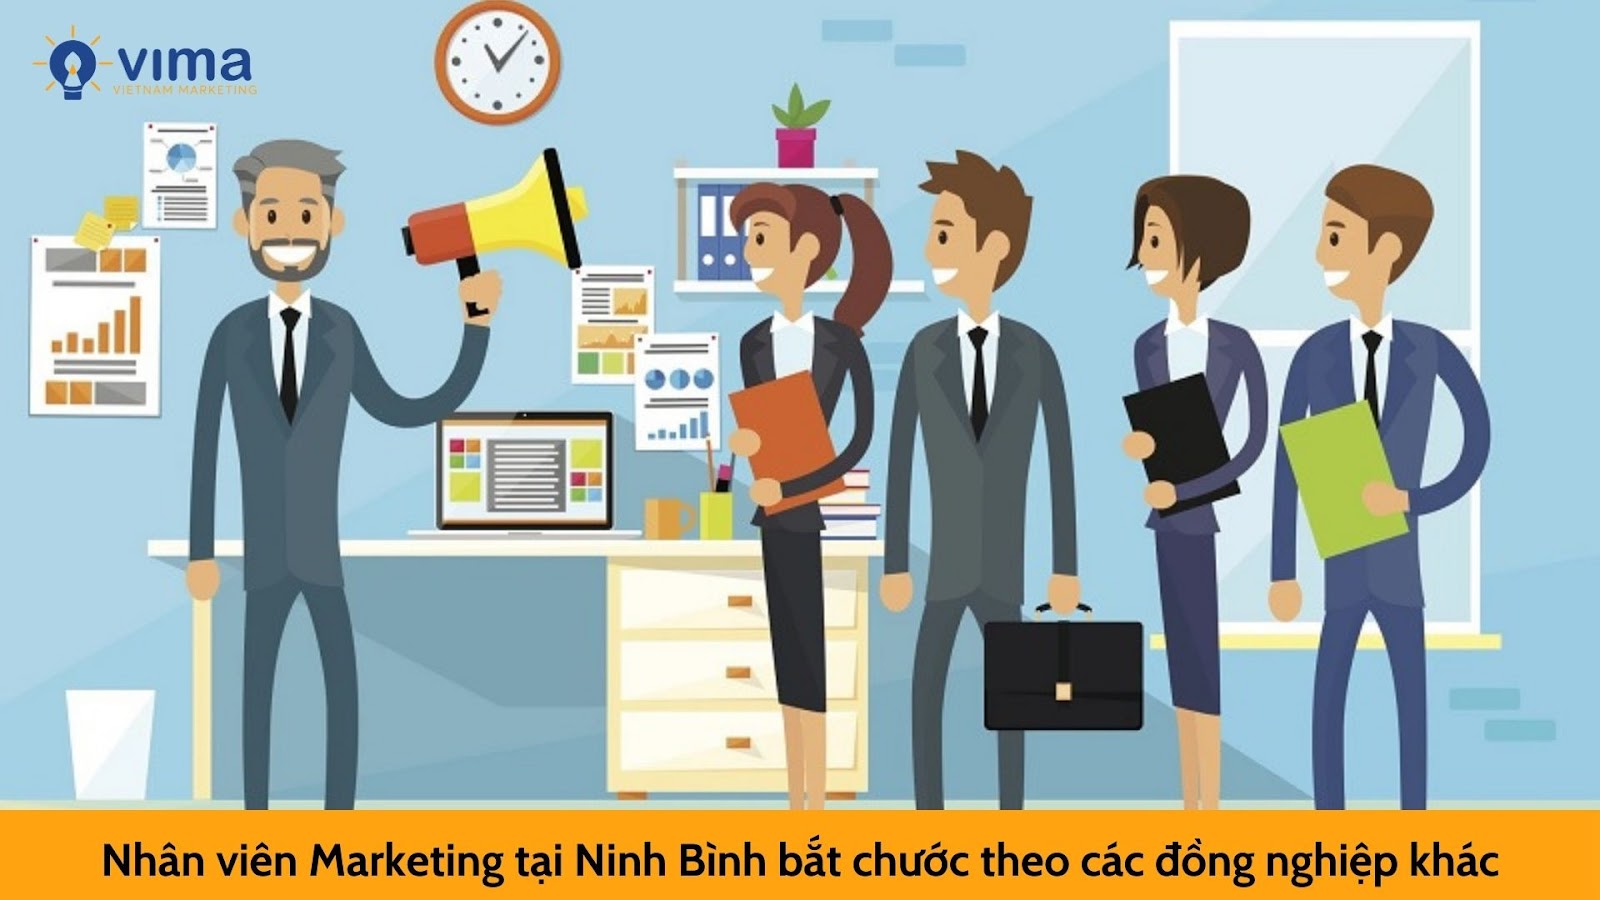 Tại sao nhân viên Marketing tại Ninh Bình nghỉ việc hàng loạt?